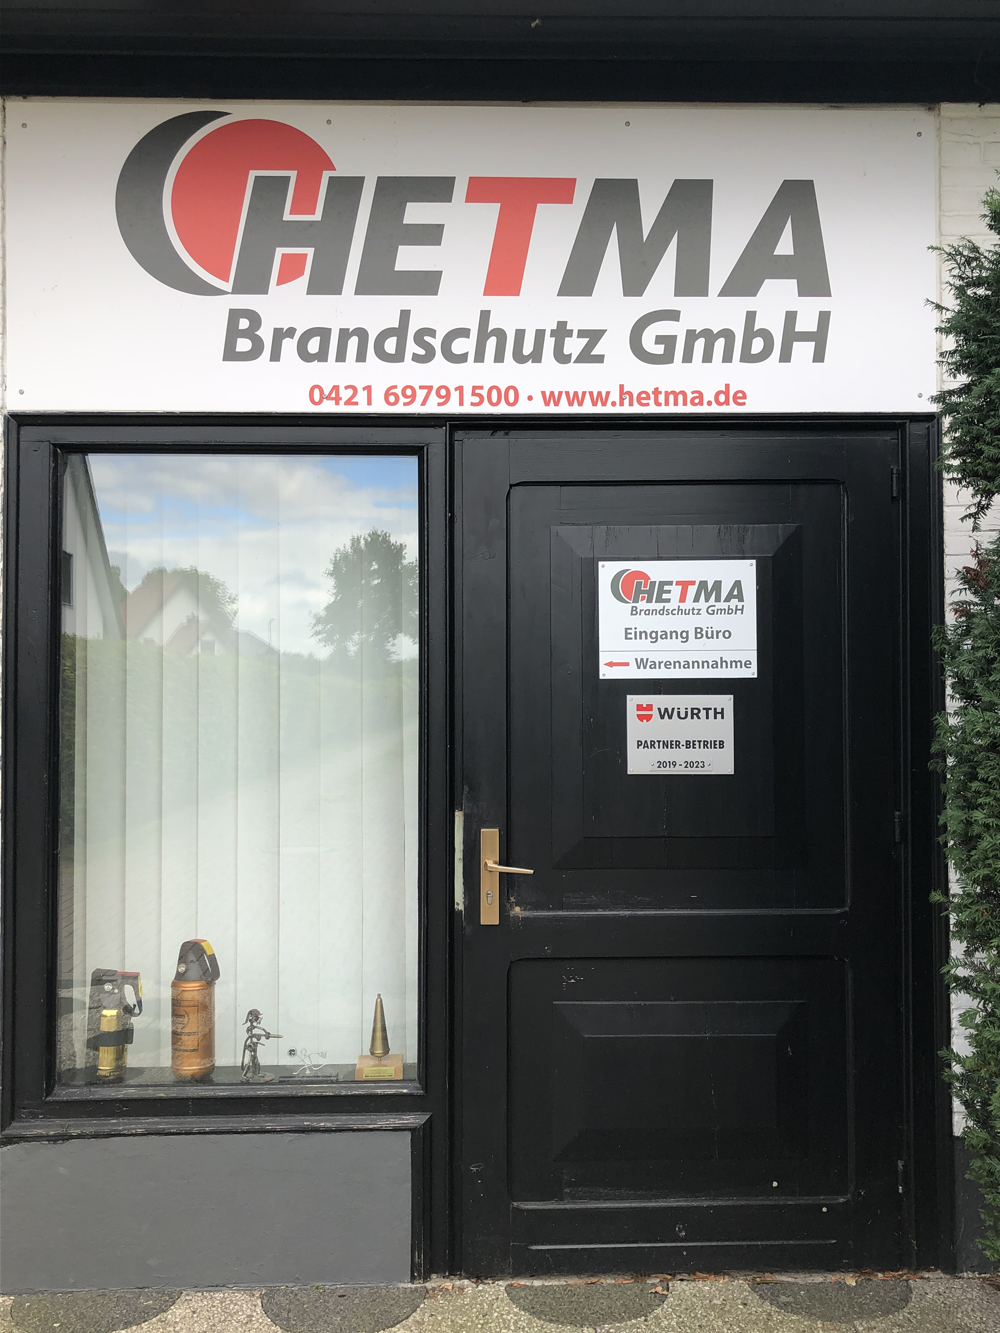 Fotos - HETMA Brandschutz GmbH - 4